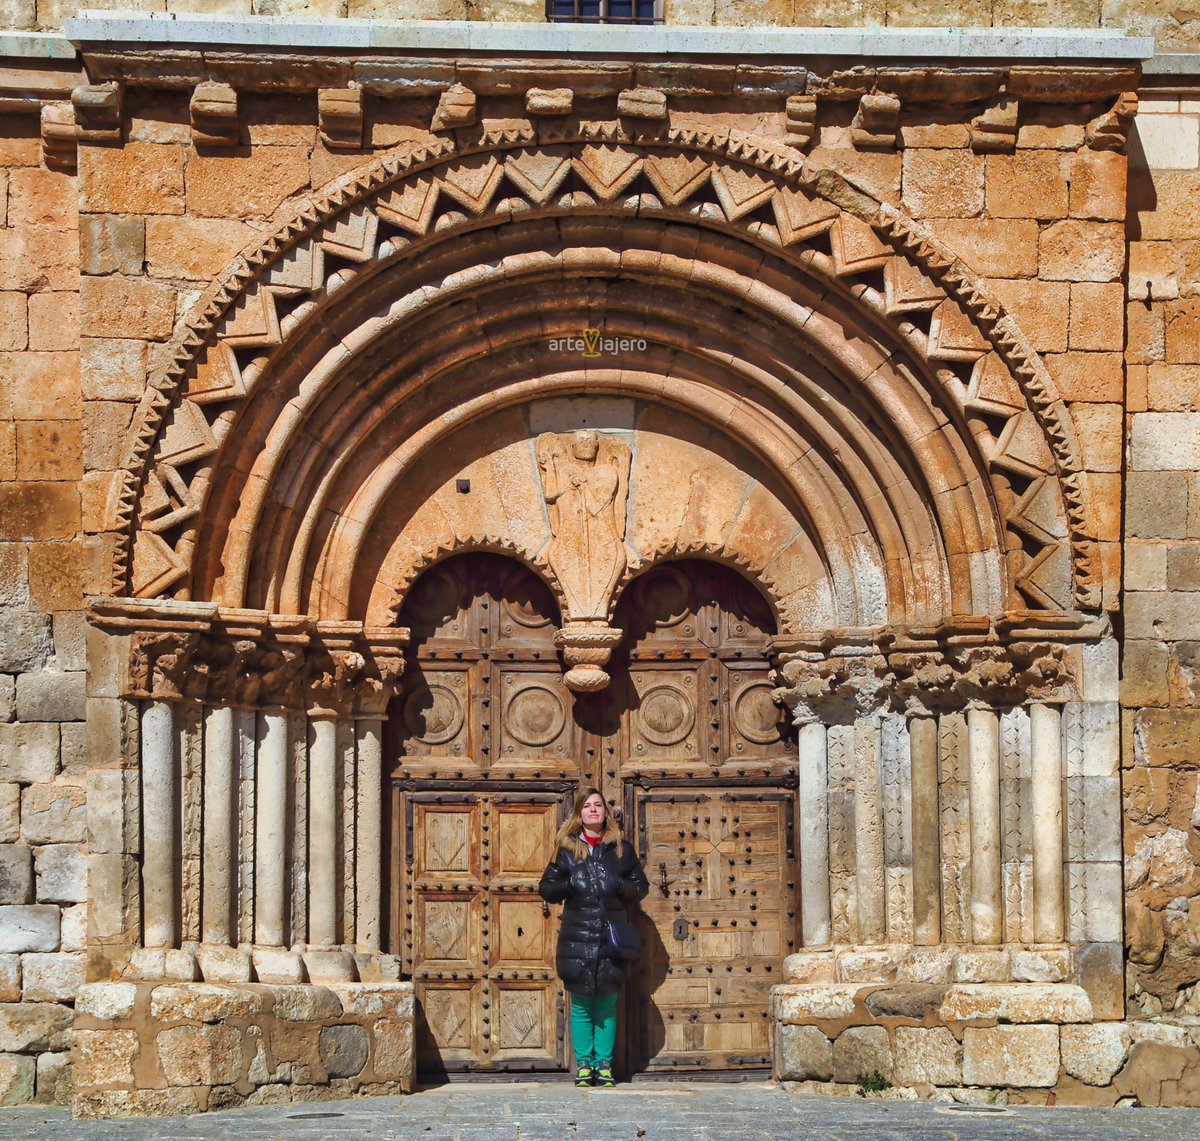 La iglesia de Caltojar nos ofrece una de las portadas más interesantes del arte románico de la provincia de #Soria. Su tímpano presenta un bajorrelieve con San Miguel Arcángel y un capitel pinjante #FelizLunes #BuenosDias